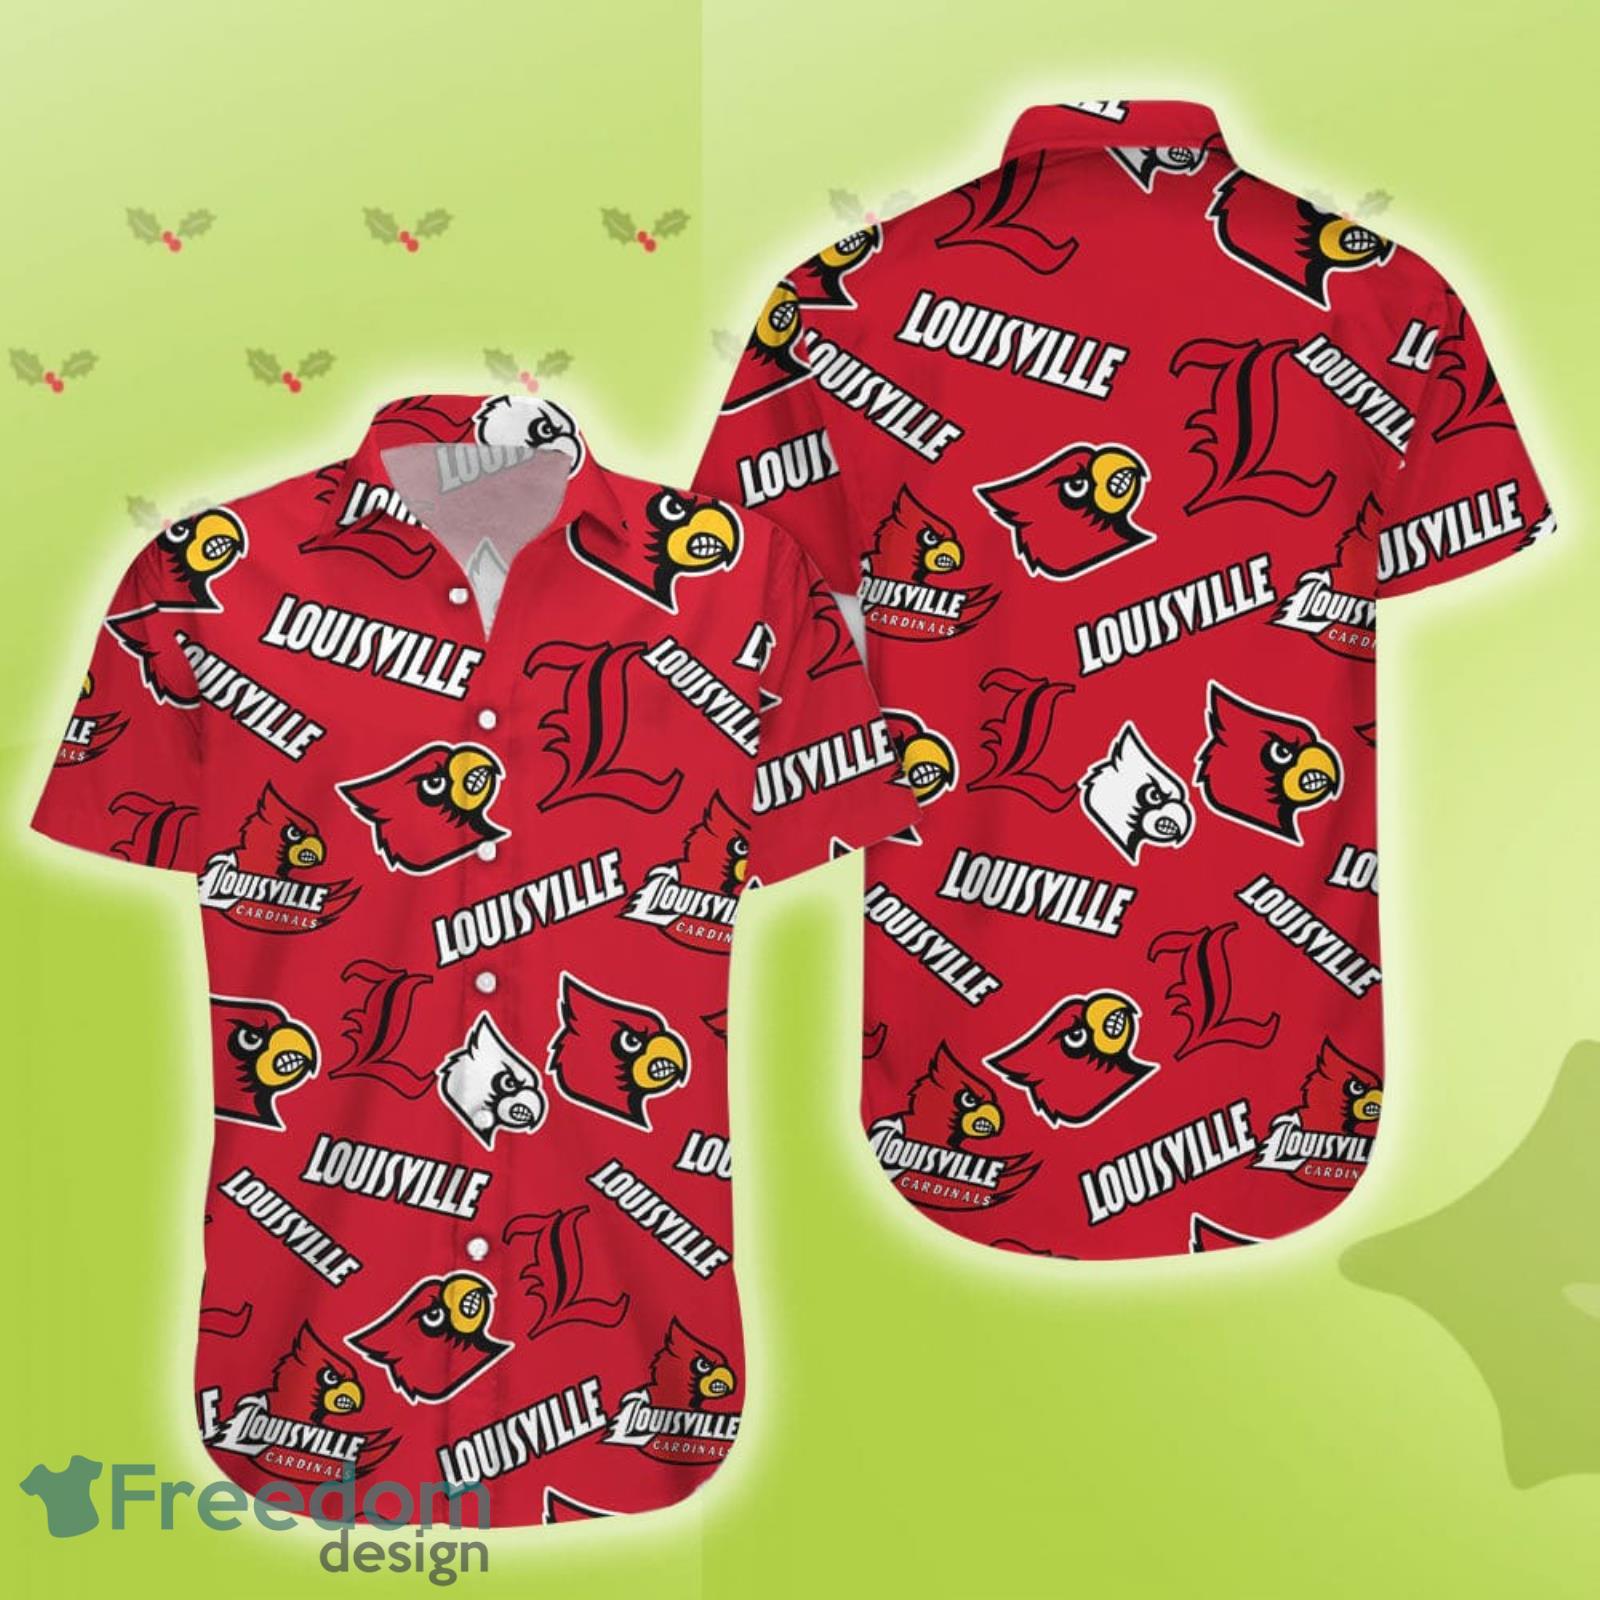 cardinals shirt mens